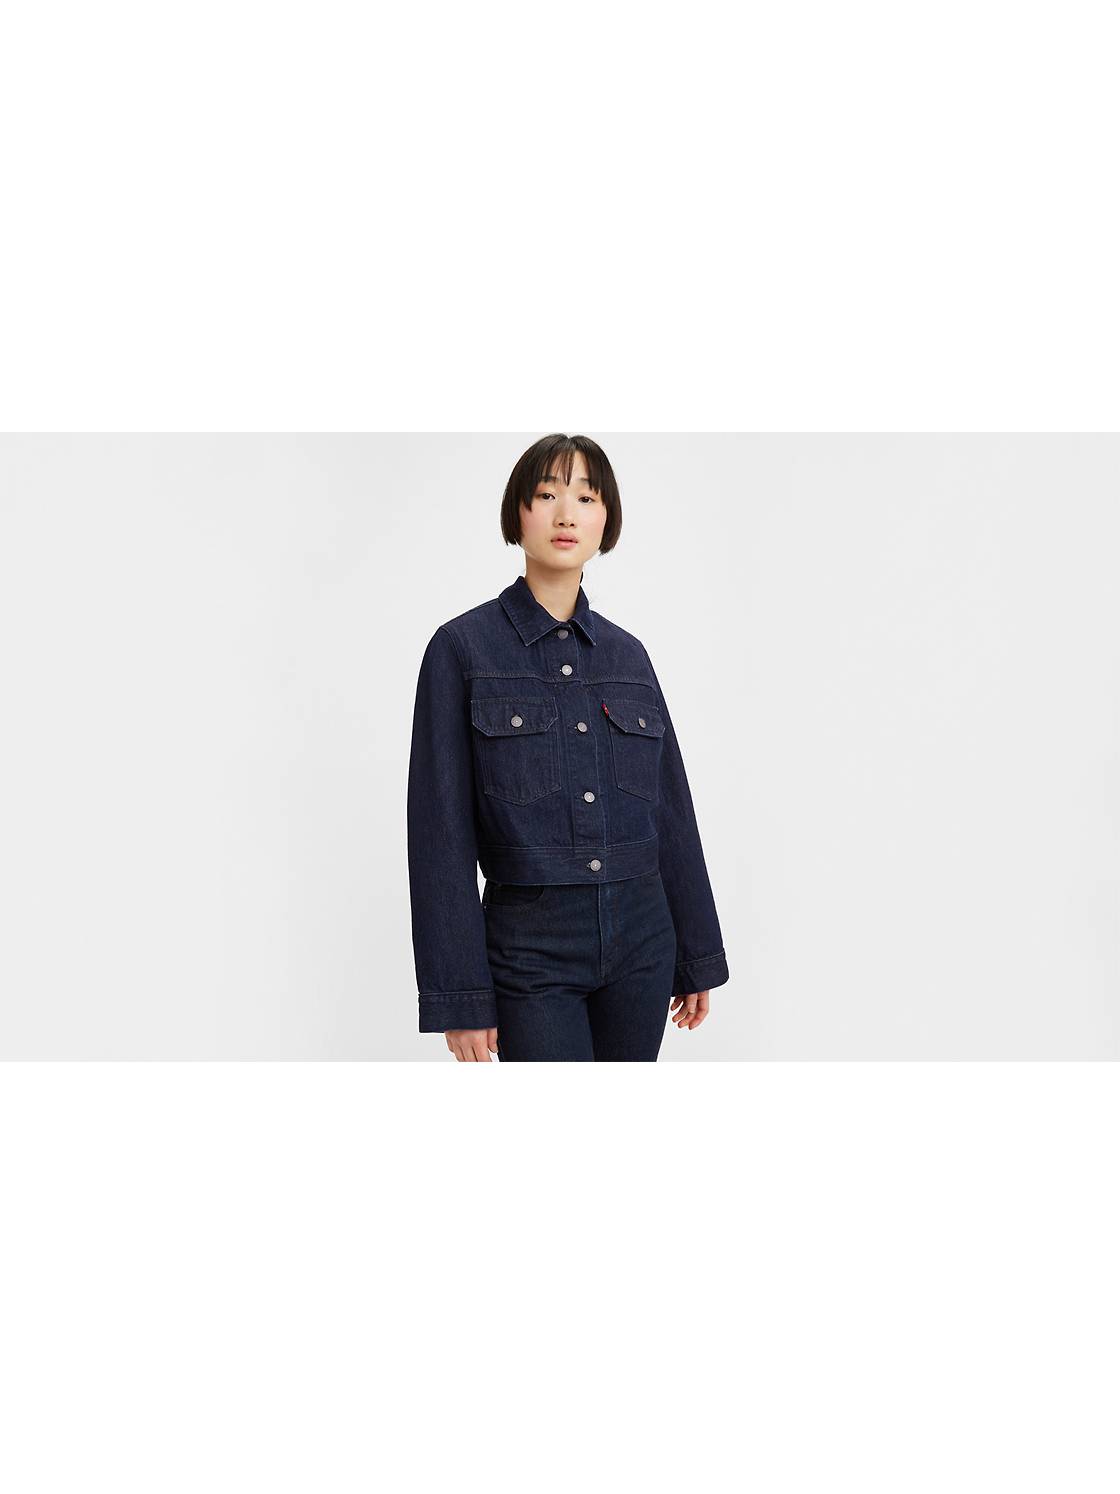 Shop Women's Jackets, Outerwear & Coats | Levi's® US